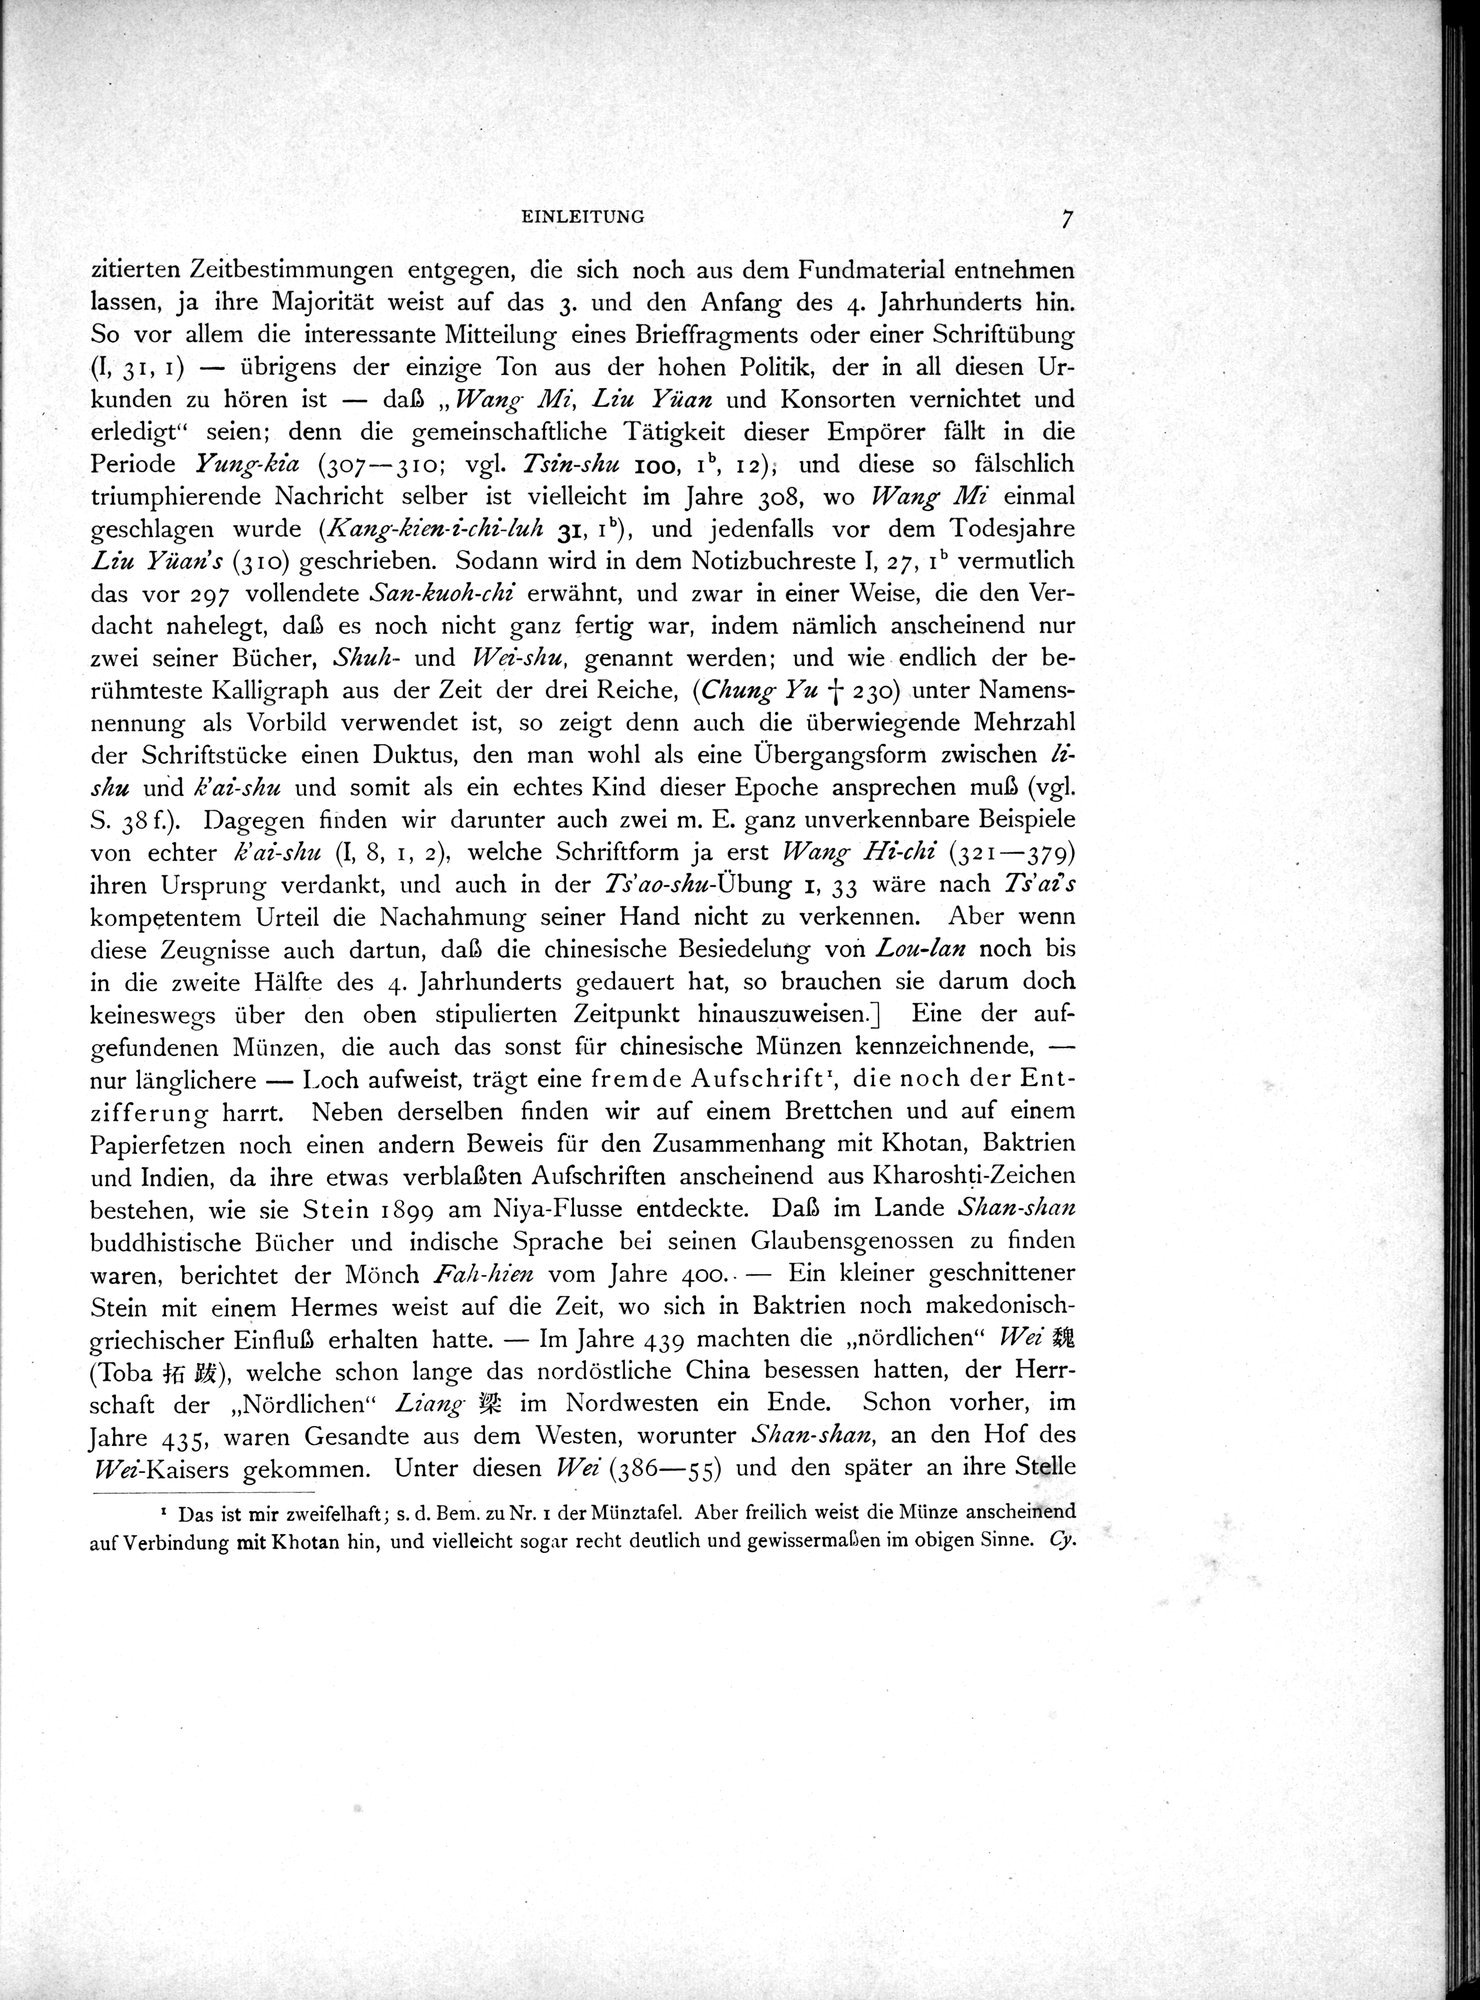 Die Chinesischen Handschriften- und sonstigen Kleinfunde Sven Hedins in Lou-lan : vol.1 / Page 31 (Grayscale High Resolution Image)